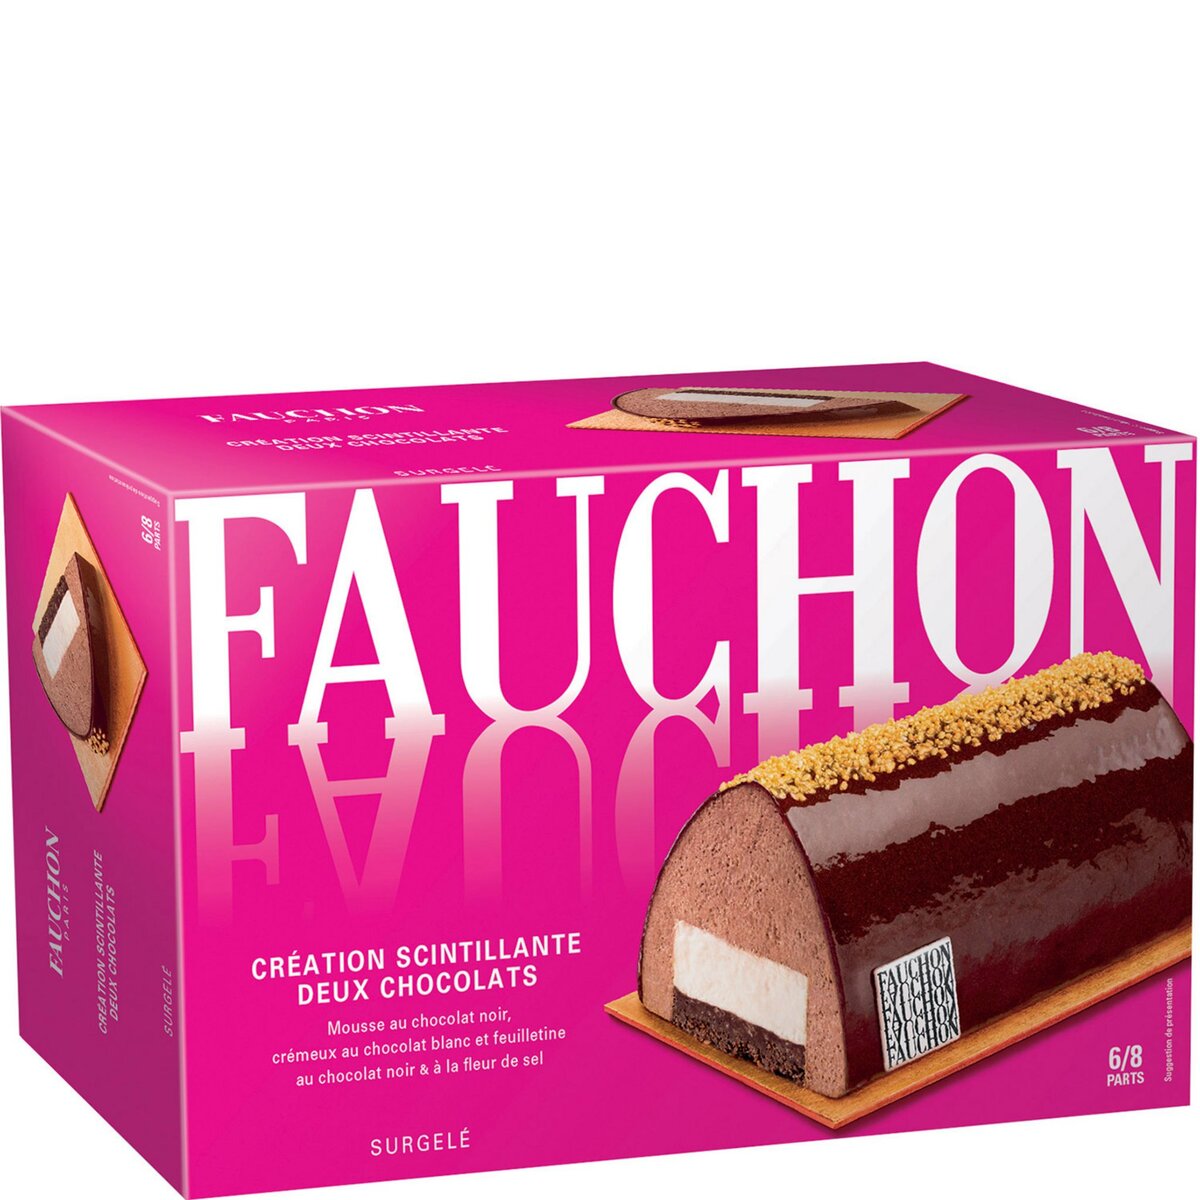 FAUCHON Fauchon Bûche glacée création scintillante aux deux chocolats 425g 6-8 parts 425g